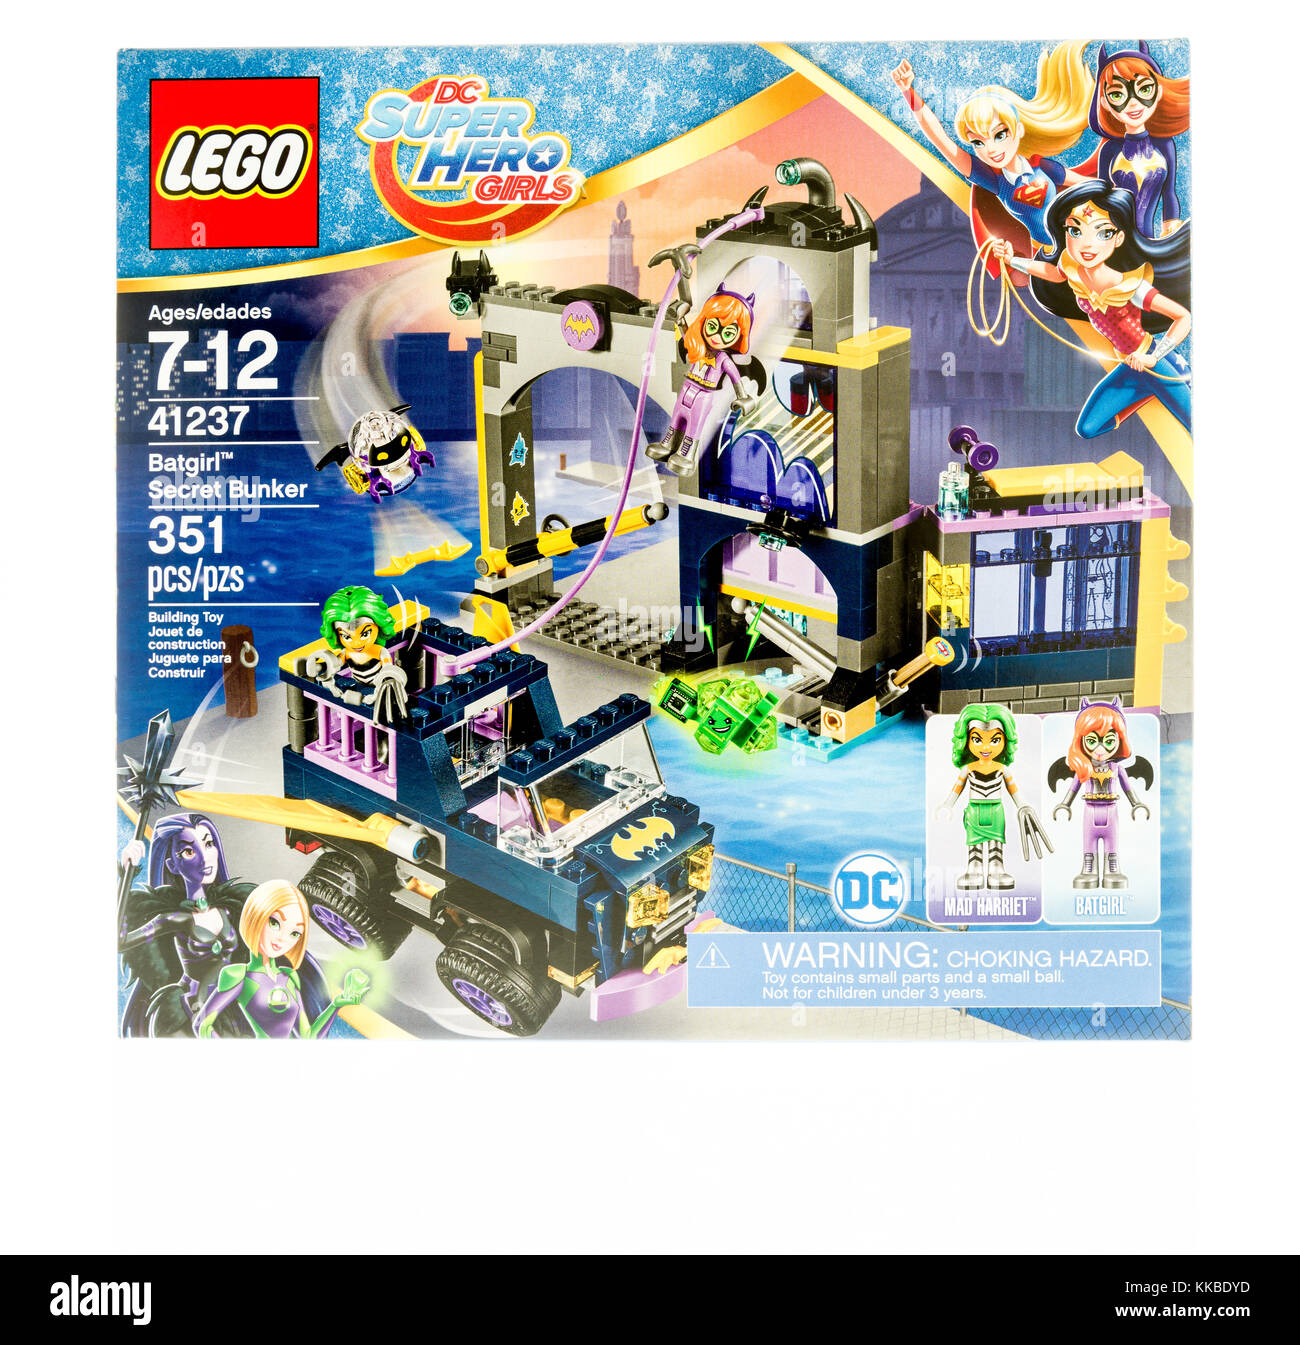 Winneconne, WI - 19 novembre 2017: Una scatola di Lego con DC Super Hero Girls con Batgirl in Secret Bunker su uno sfondo isolato. Foto Stock